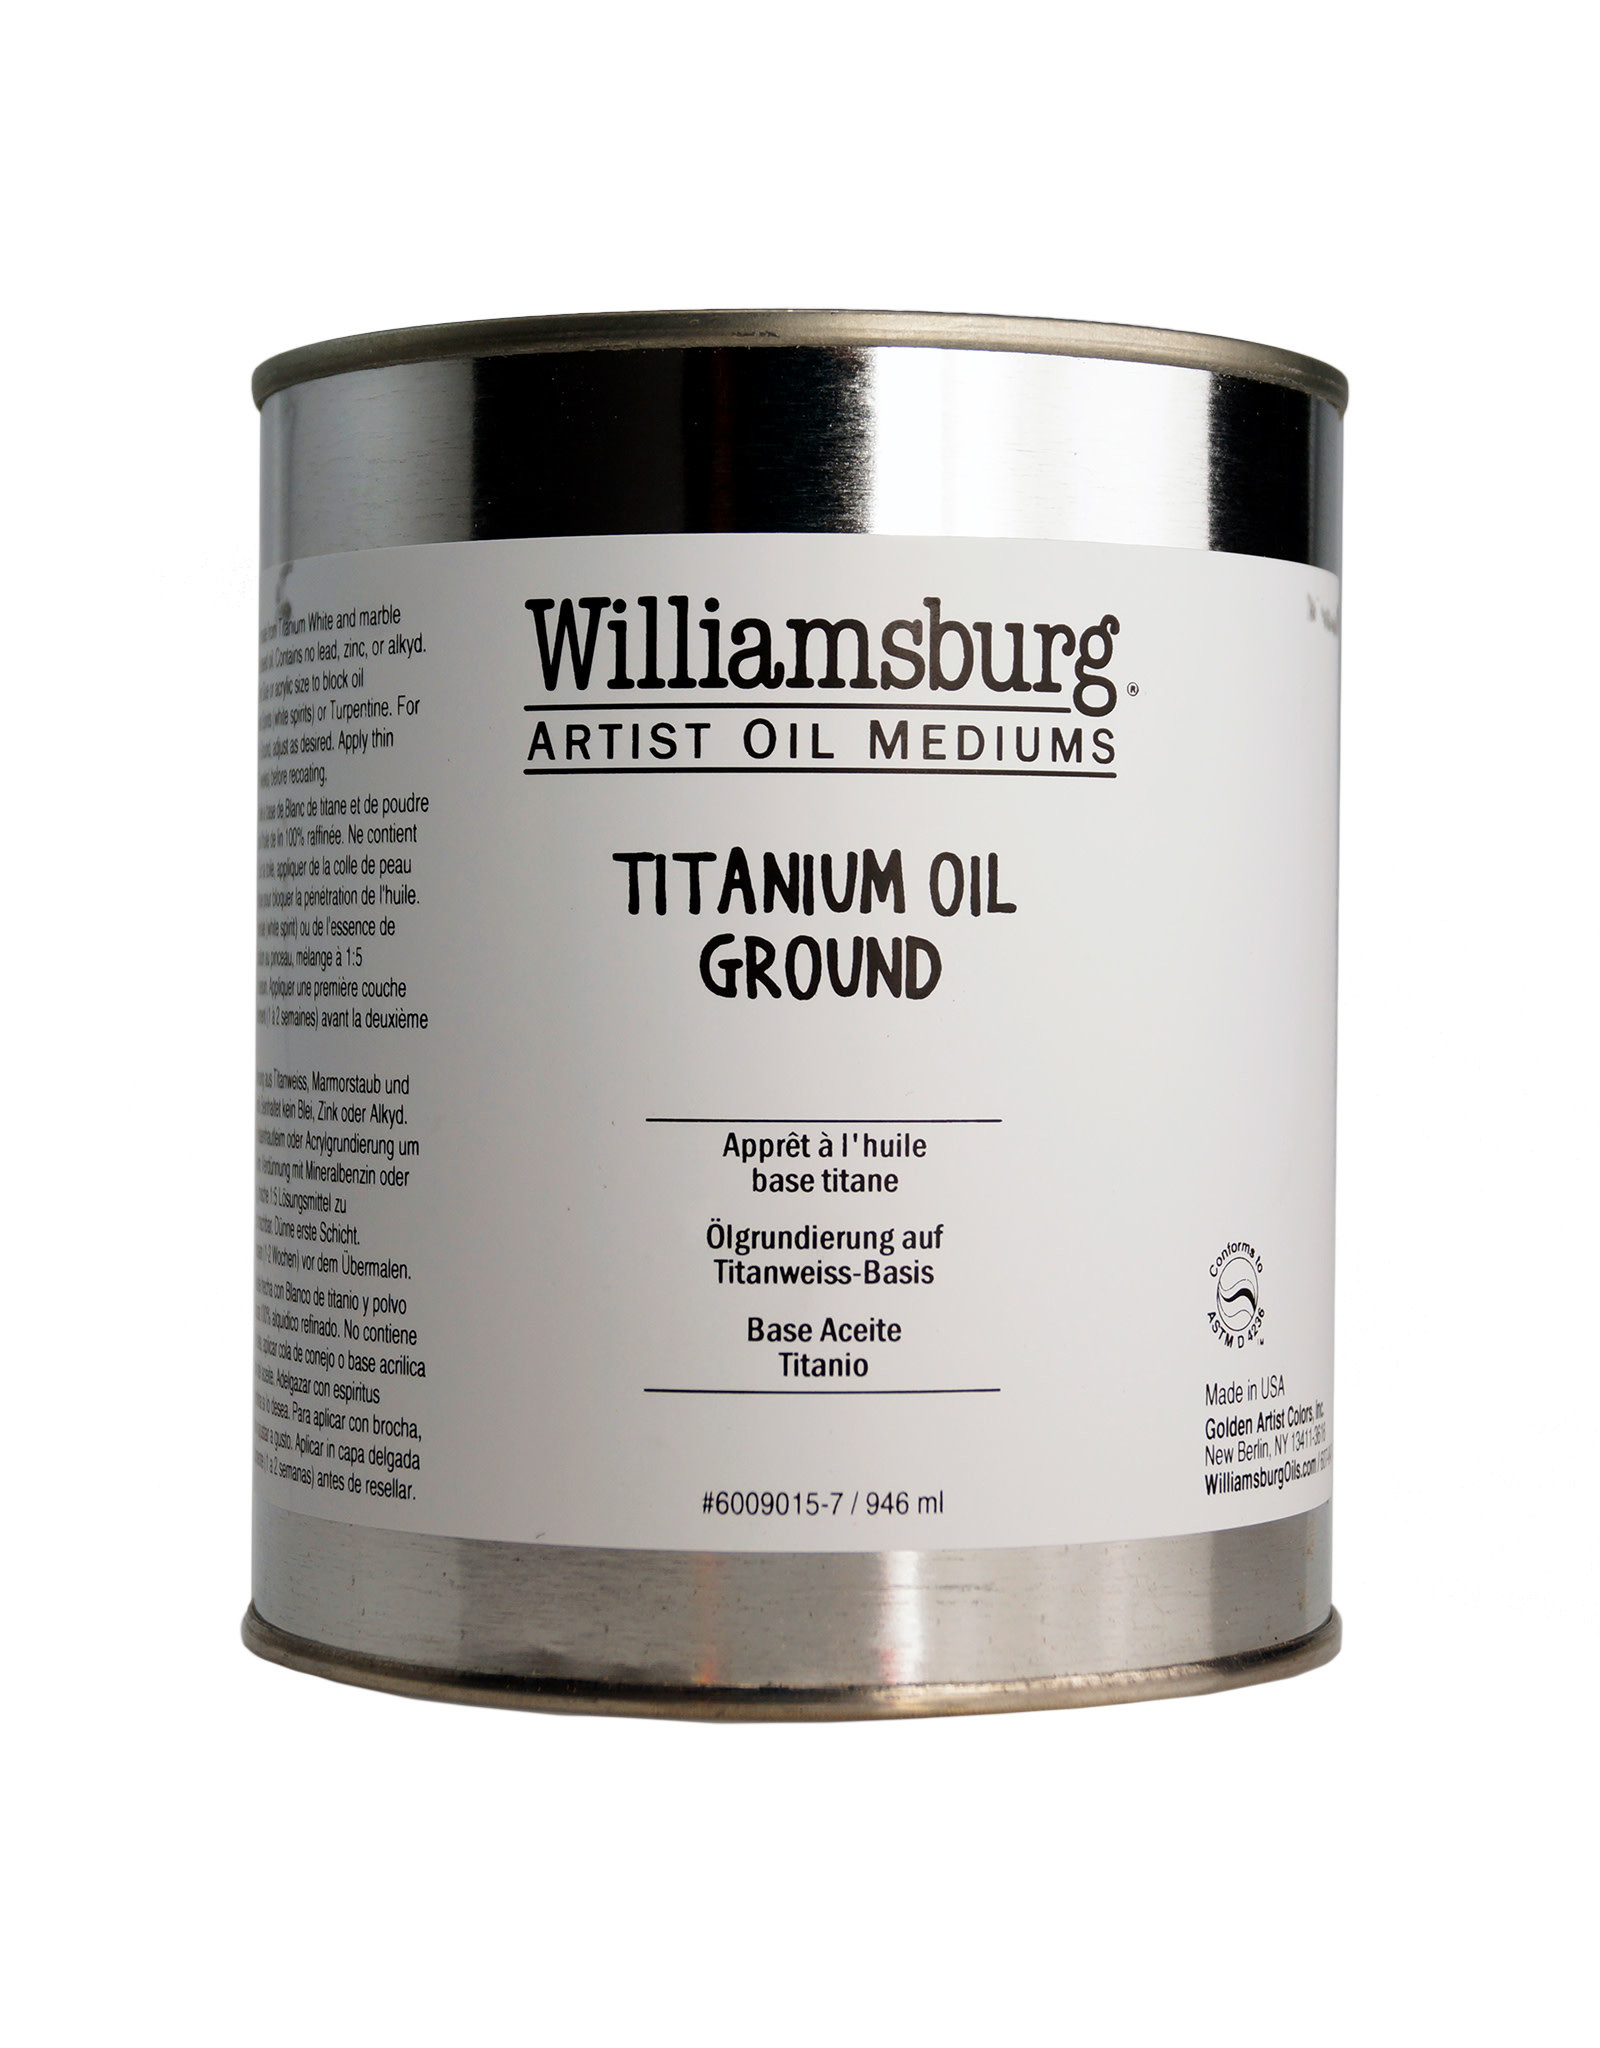 Golden Williamsburg Titanium Oil Ground 32oz